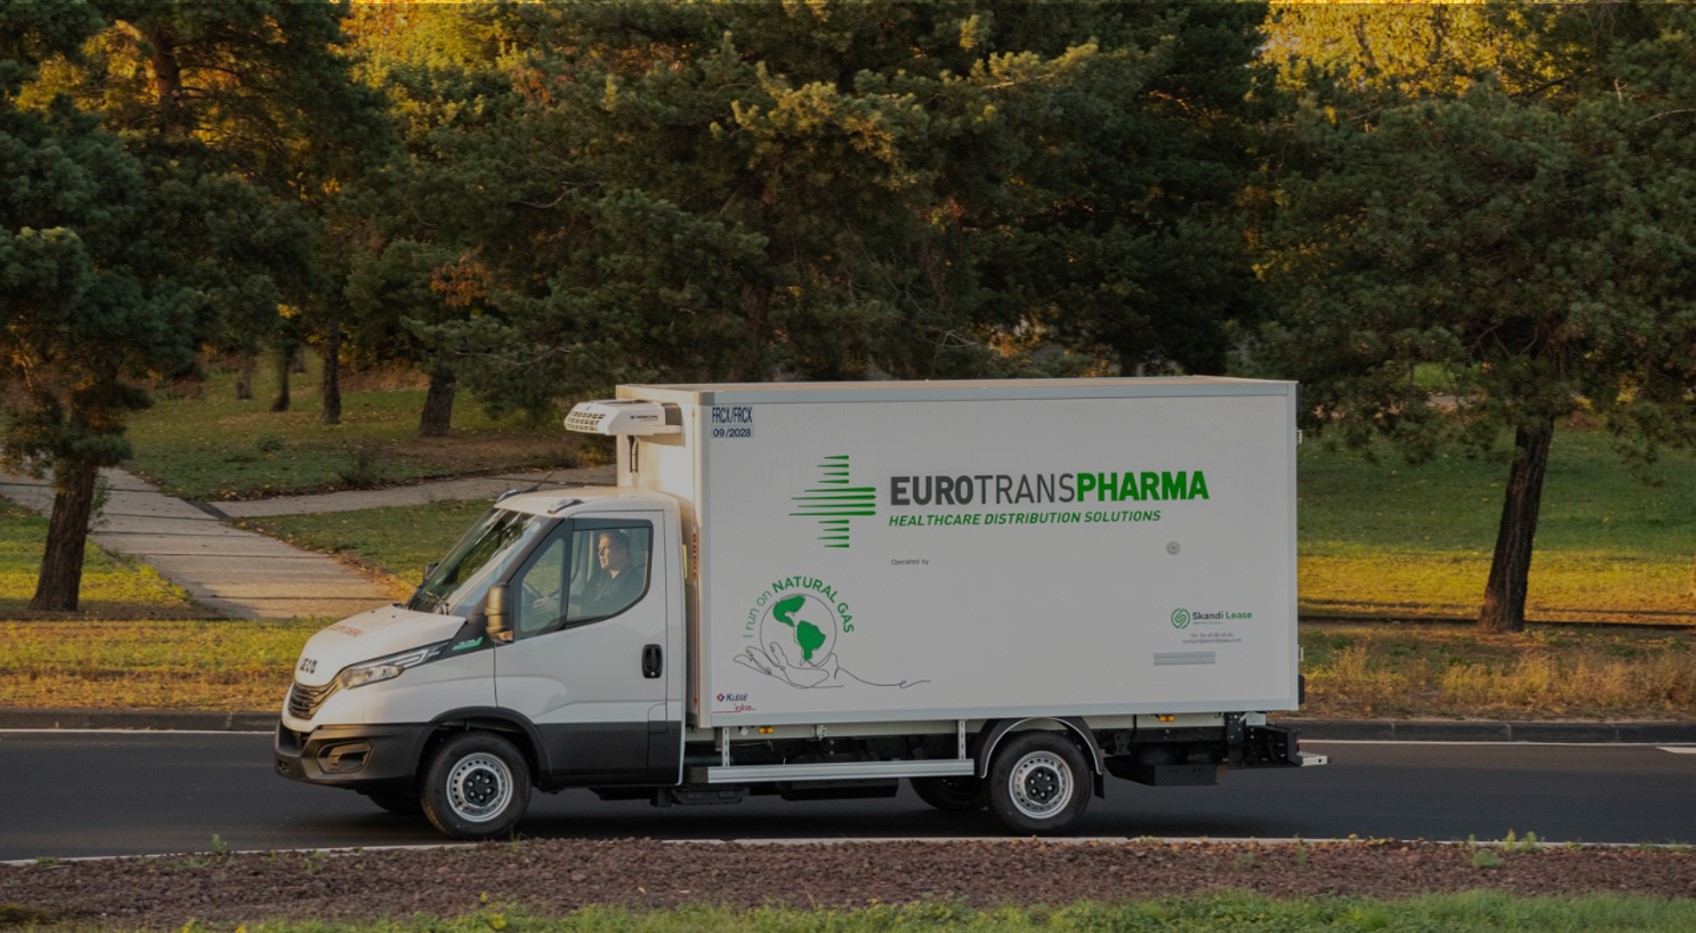 La red de transporte de Eurotranspharma, lista para el mercado alemán